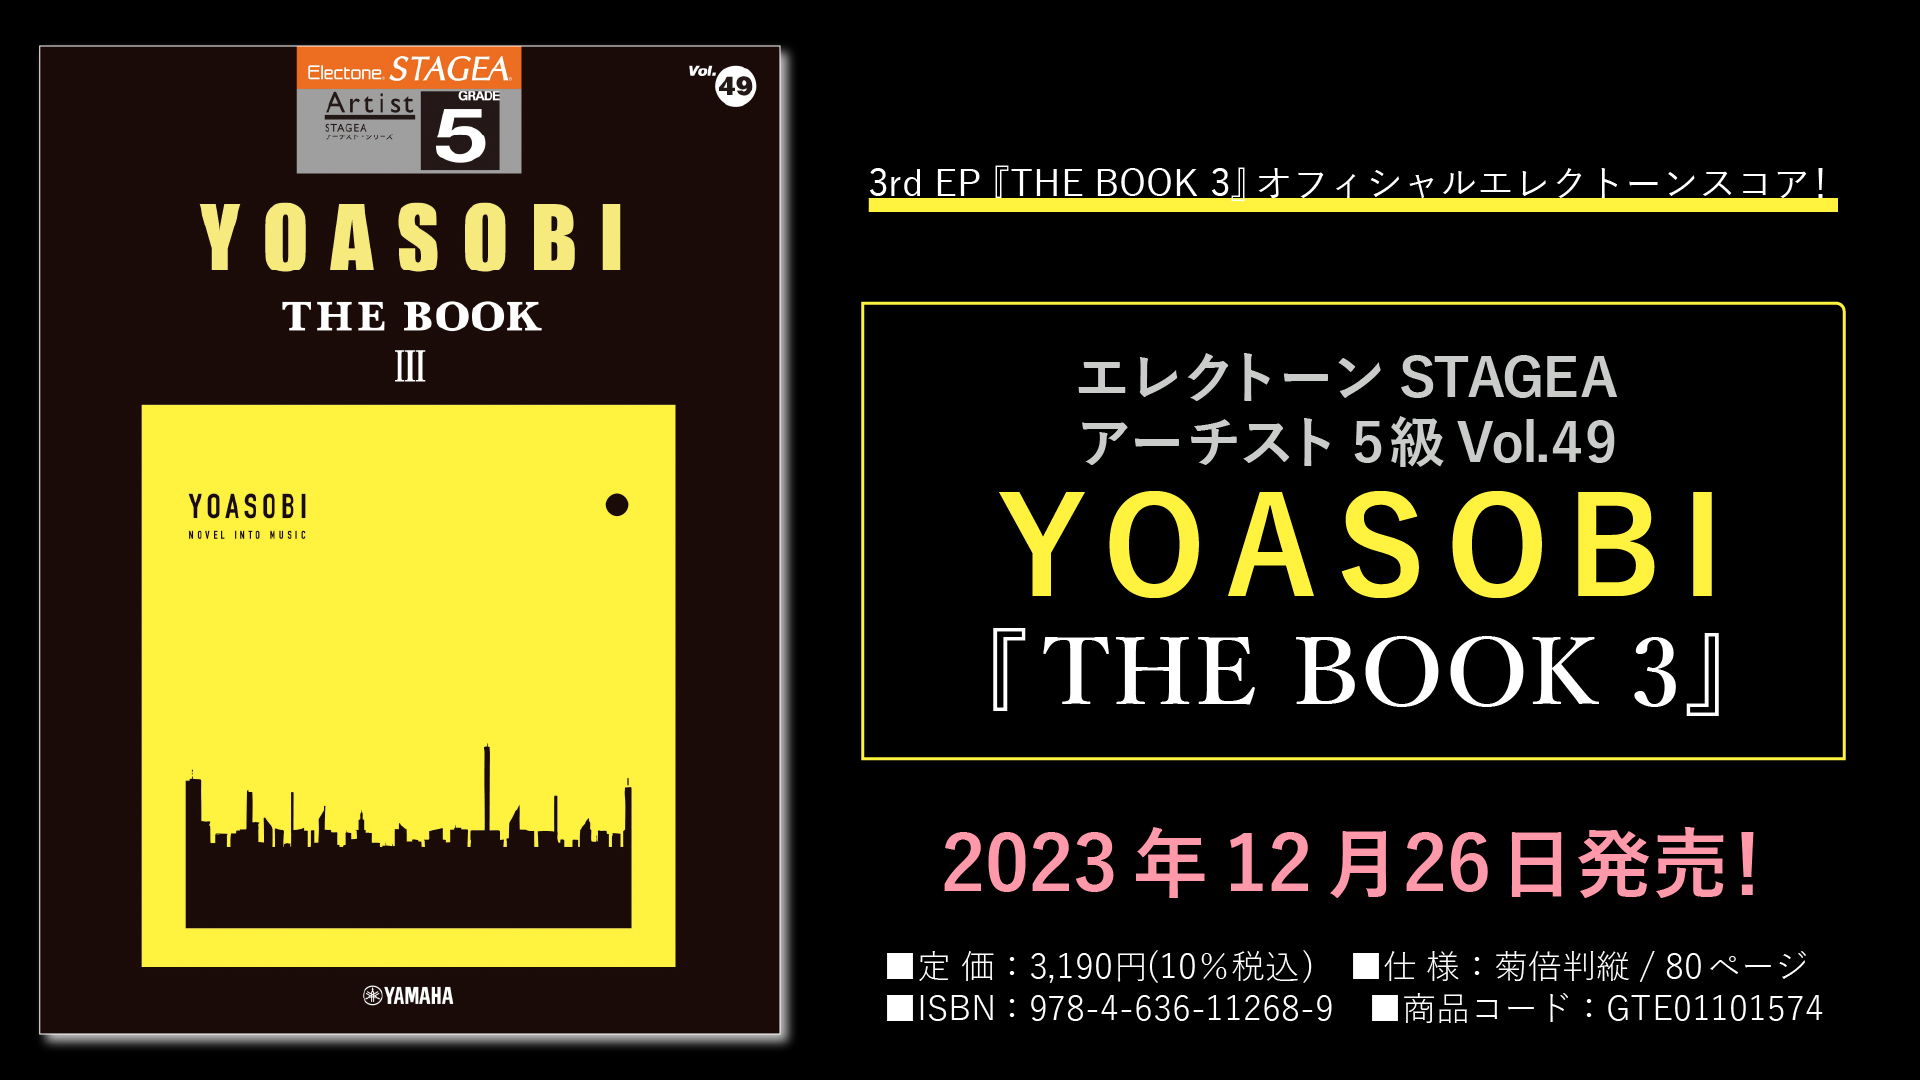 エレクトーン STAGEA アーチスト 5級 Vol.49 YOASOBI 『THE BOOK 3 ...